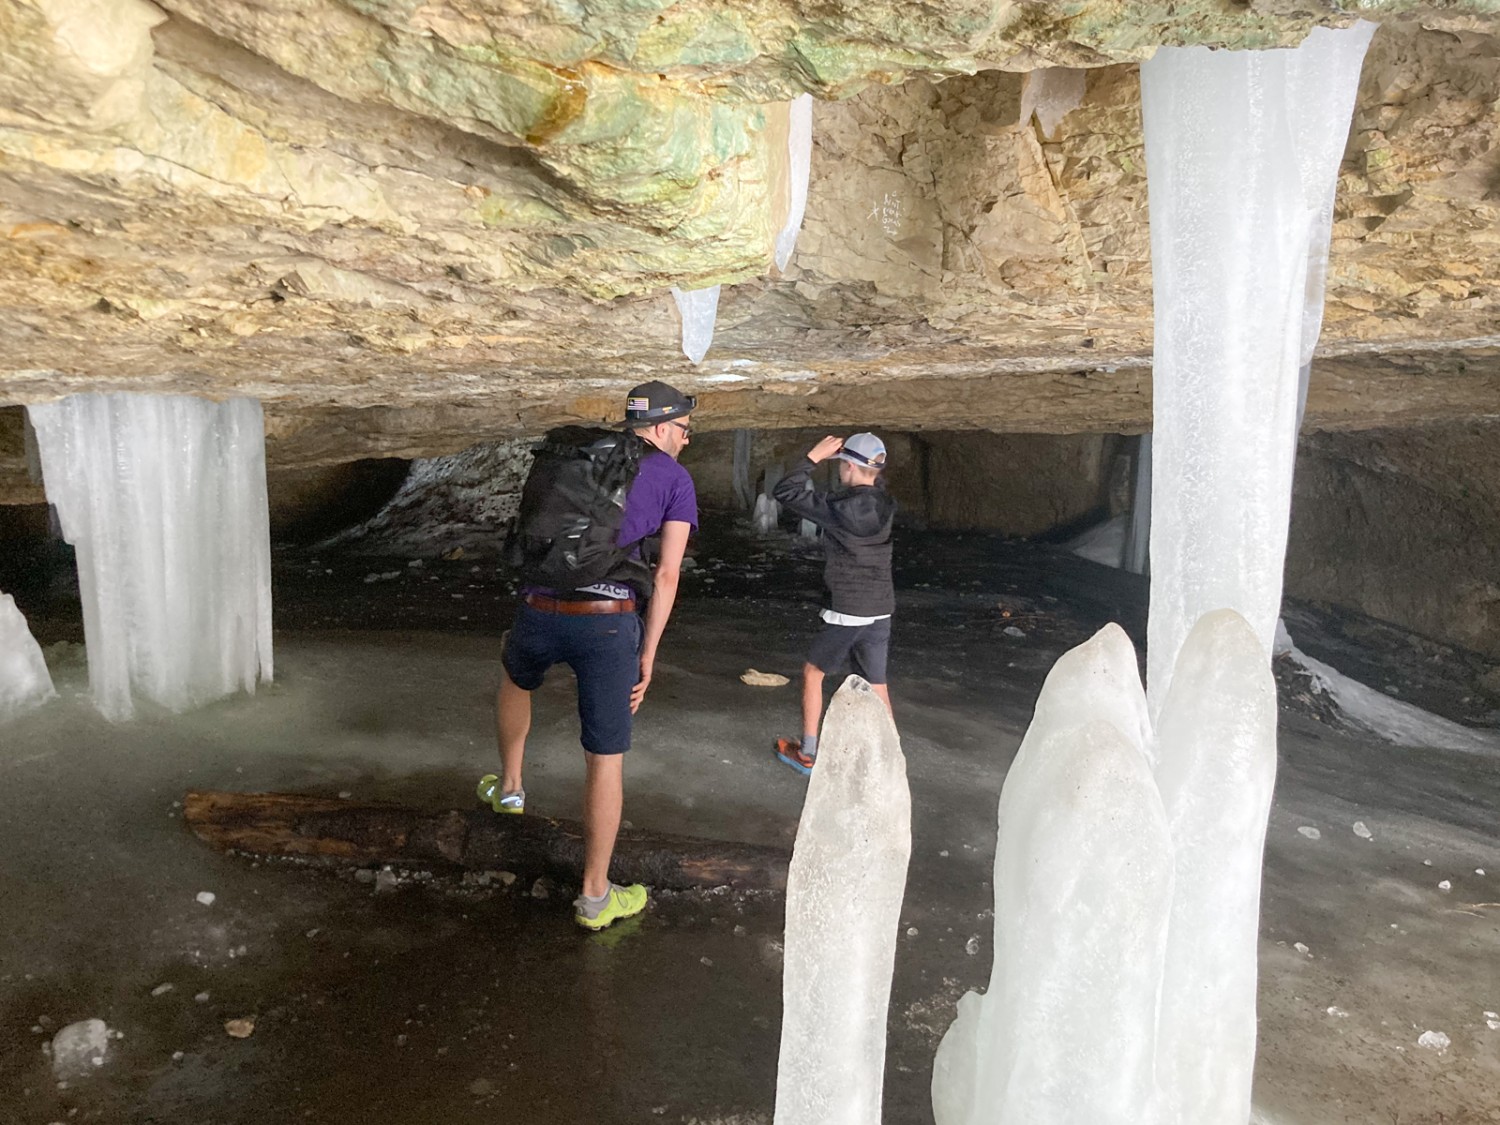 De grandes stalagmites et stalactites dans la grotte. Photo: Anna Kocher